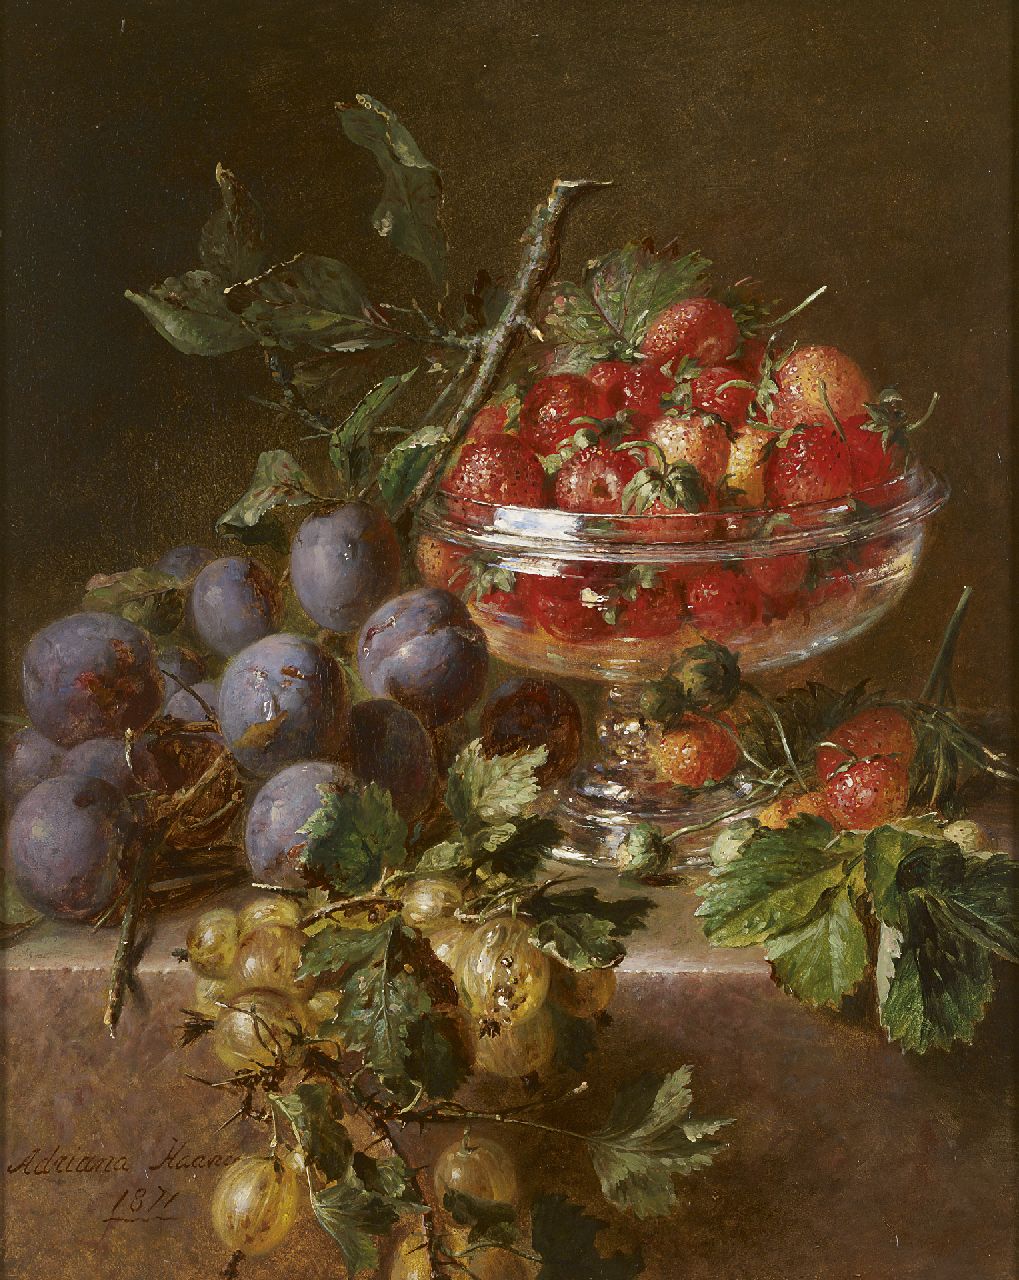 Haanen A.J.  | Adriana Johanna Haanen, Fruitstilleven met pruimen, kruisbessen en aardbeien in glazen schaal, olieverf op paneel 38,3 x 30,3 cm, gesigneerd linksonder en gedateerd 1871